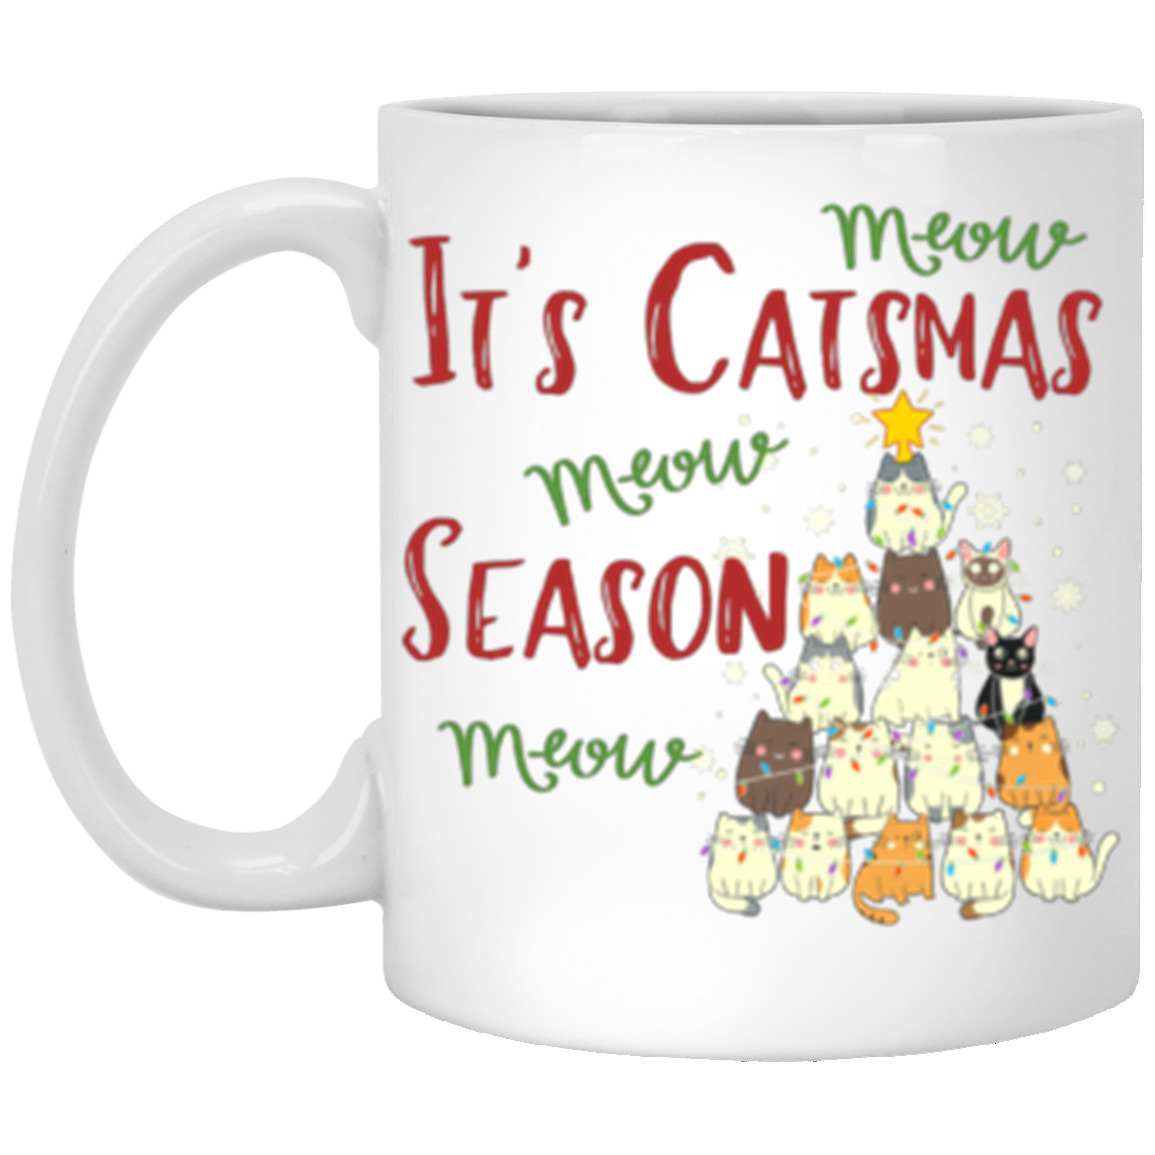 Catsmas Season Mug (Double Side)